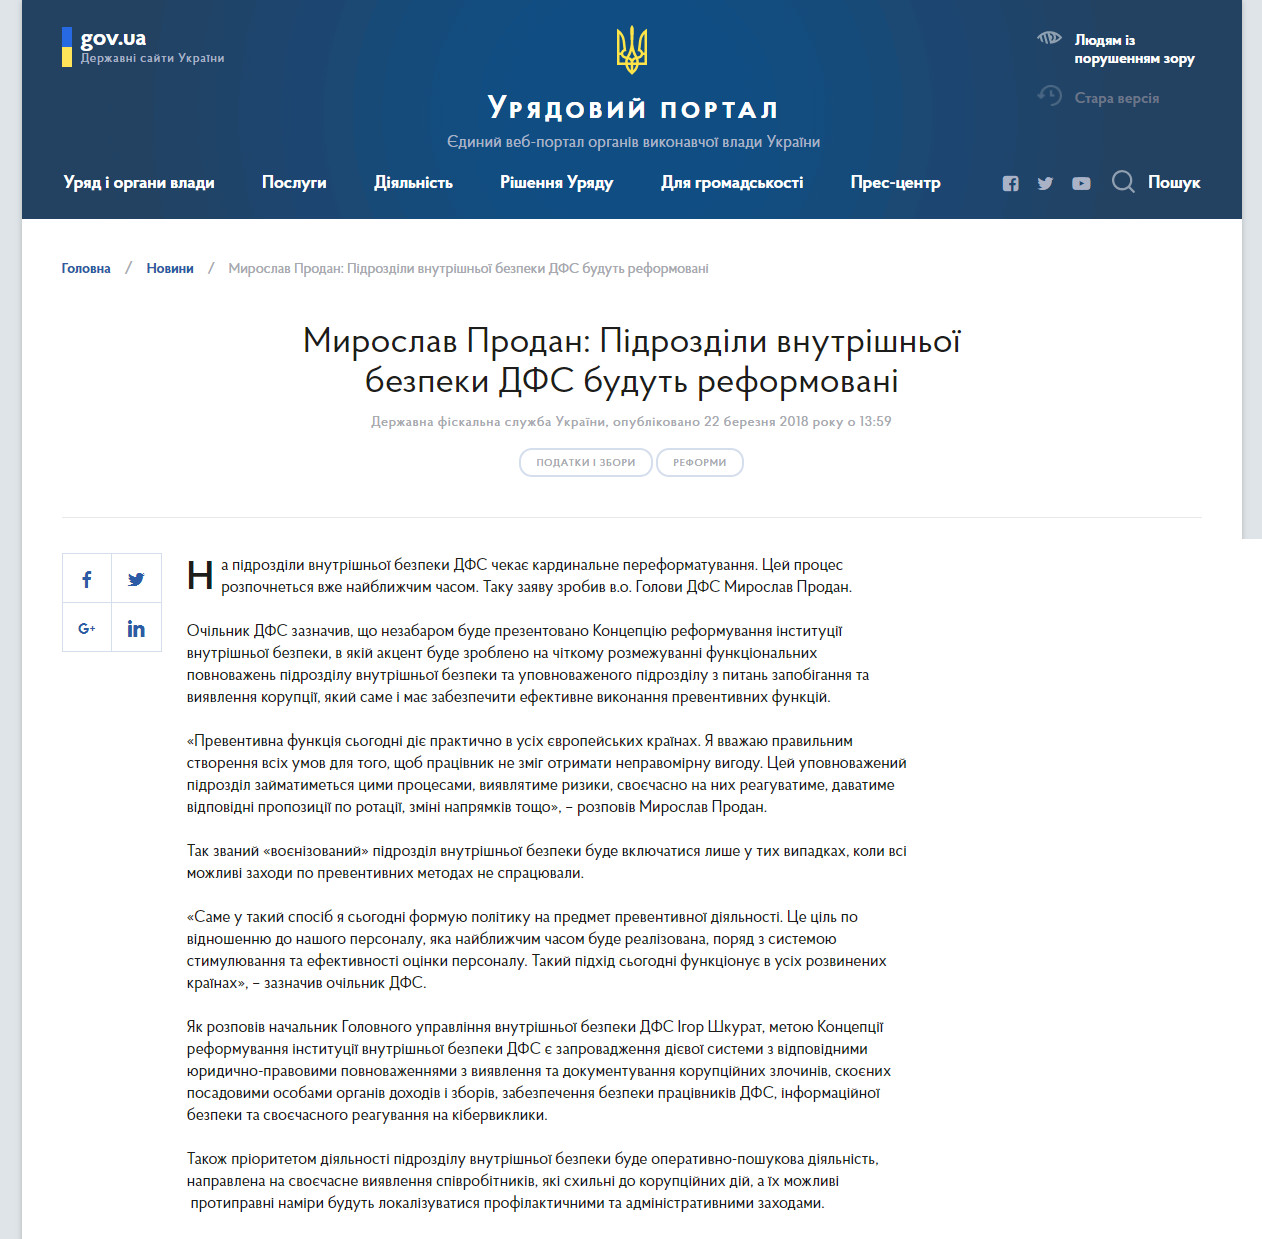 https://www.kmu.gov.ua/ua/news/miroslav-prodan-pidrozdili-vnutrishnoyi-bezpeki-dfs-budut-reformovani